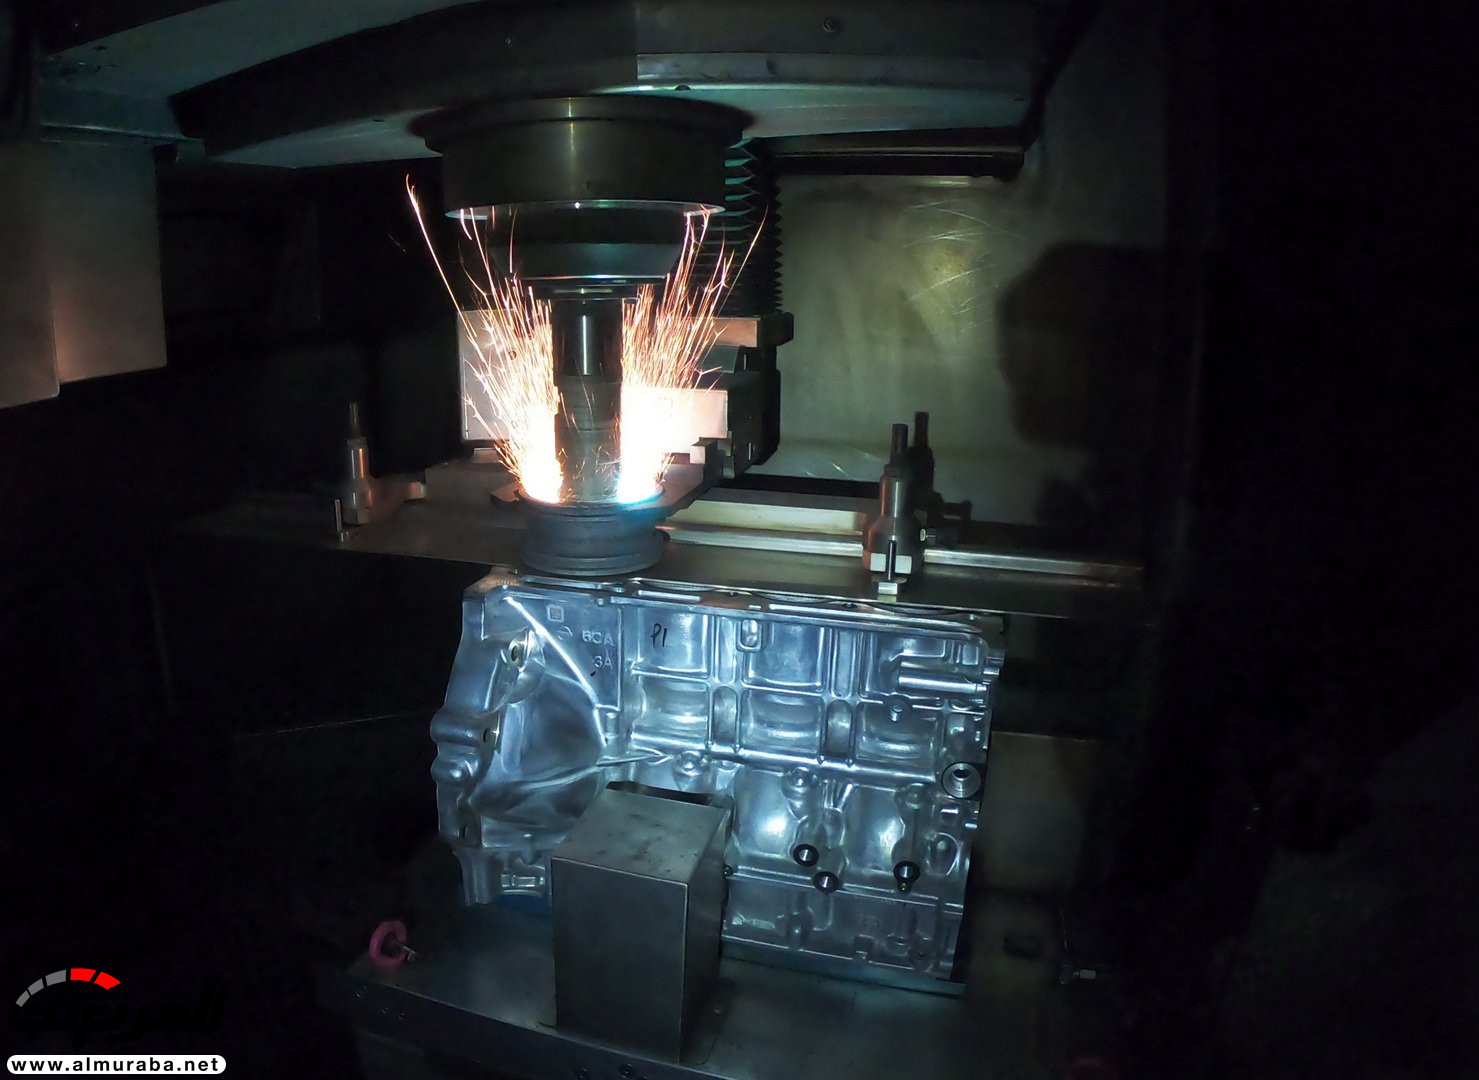 محرك نيسان التيما 2019 يمتلك تقنية مأخوذة من GT-R 2